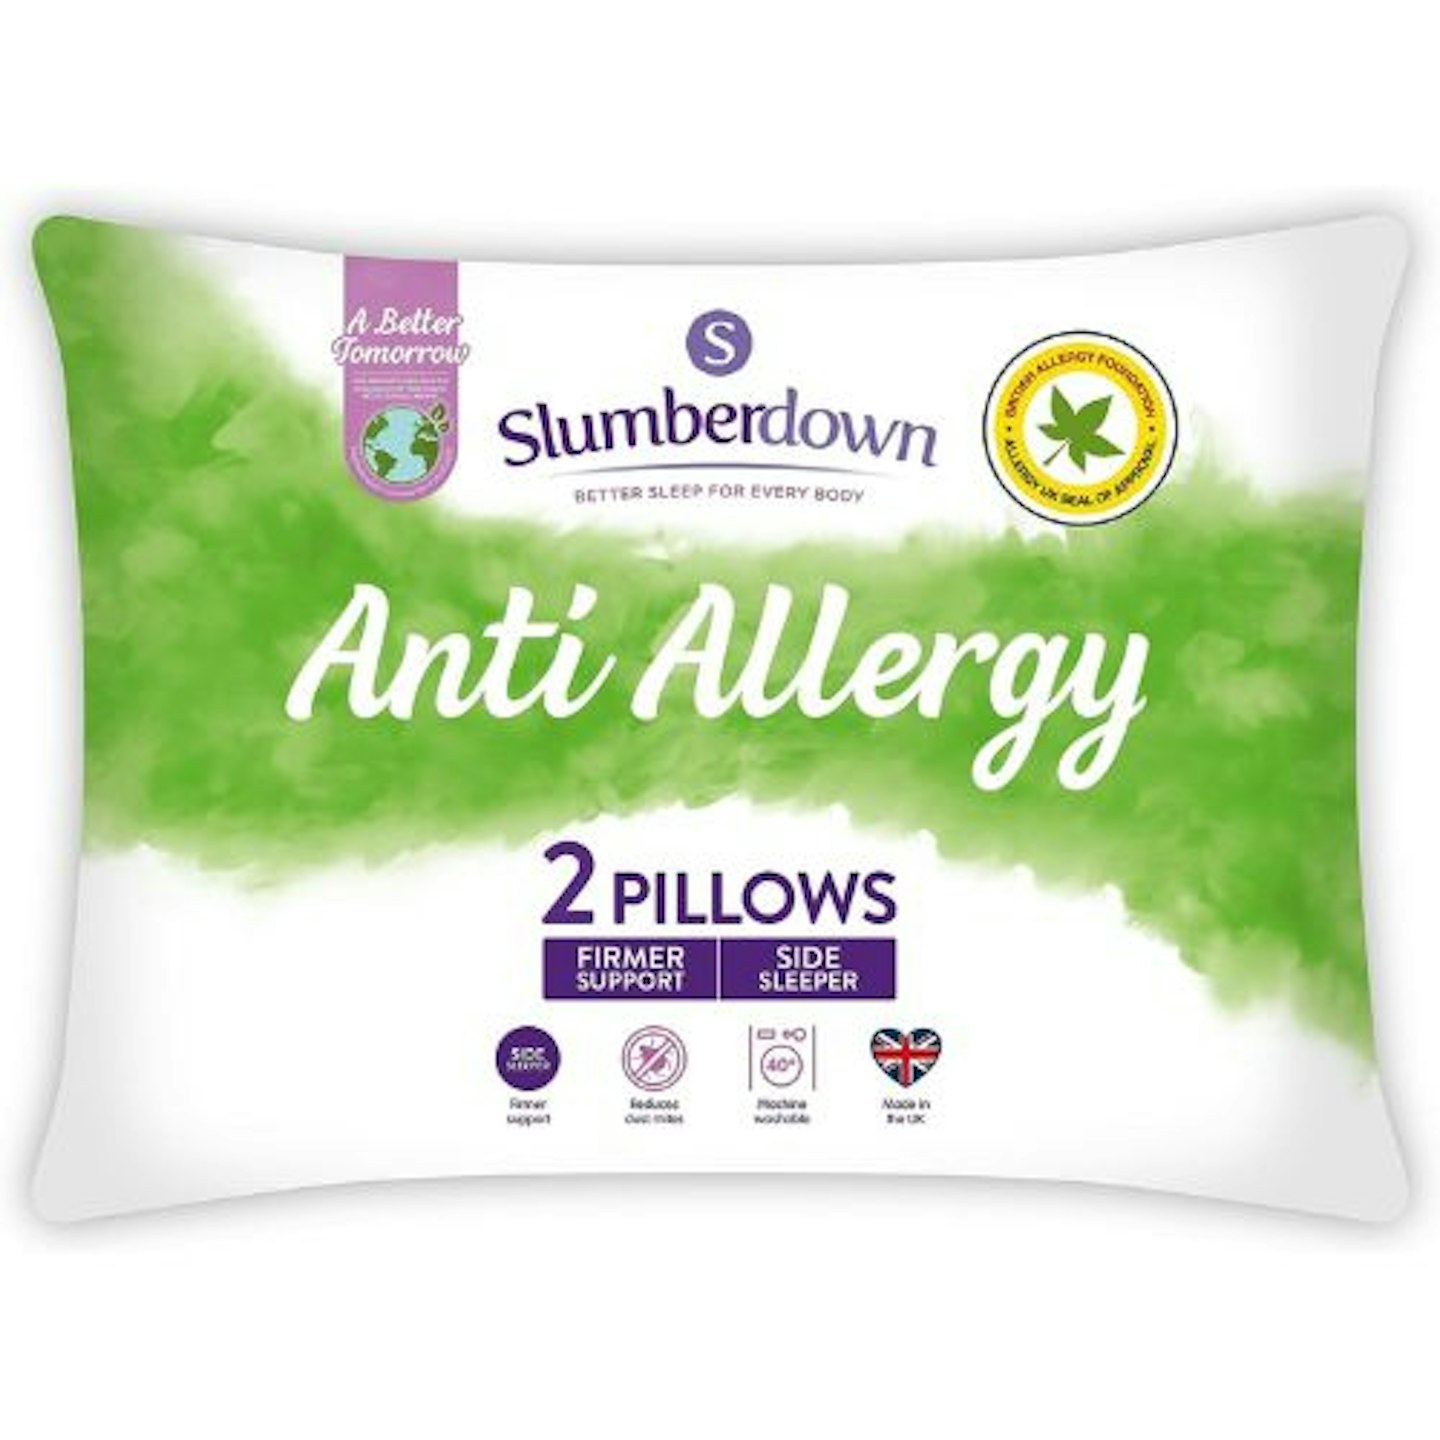 Slumberdown Anti Allergy Pillows 2 Pack